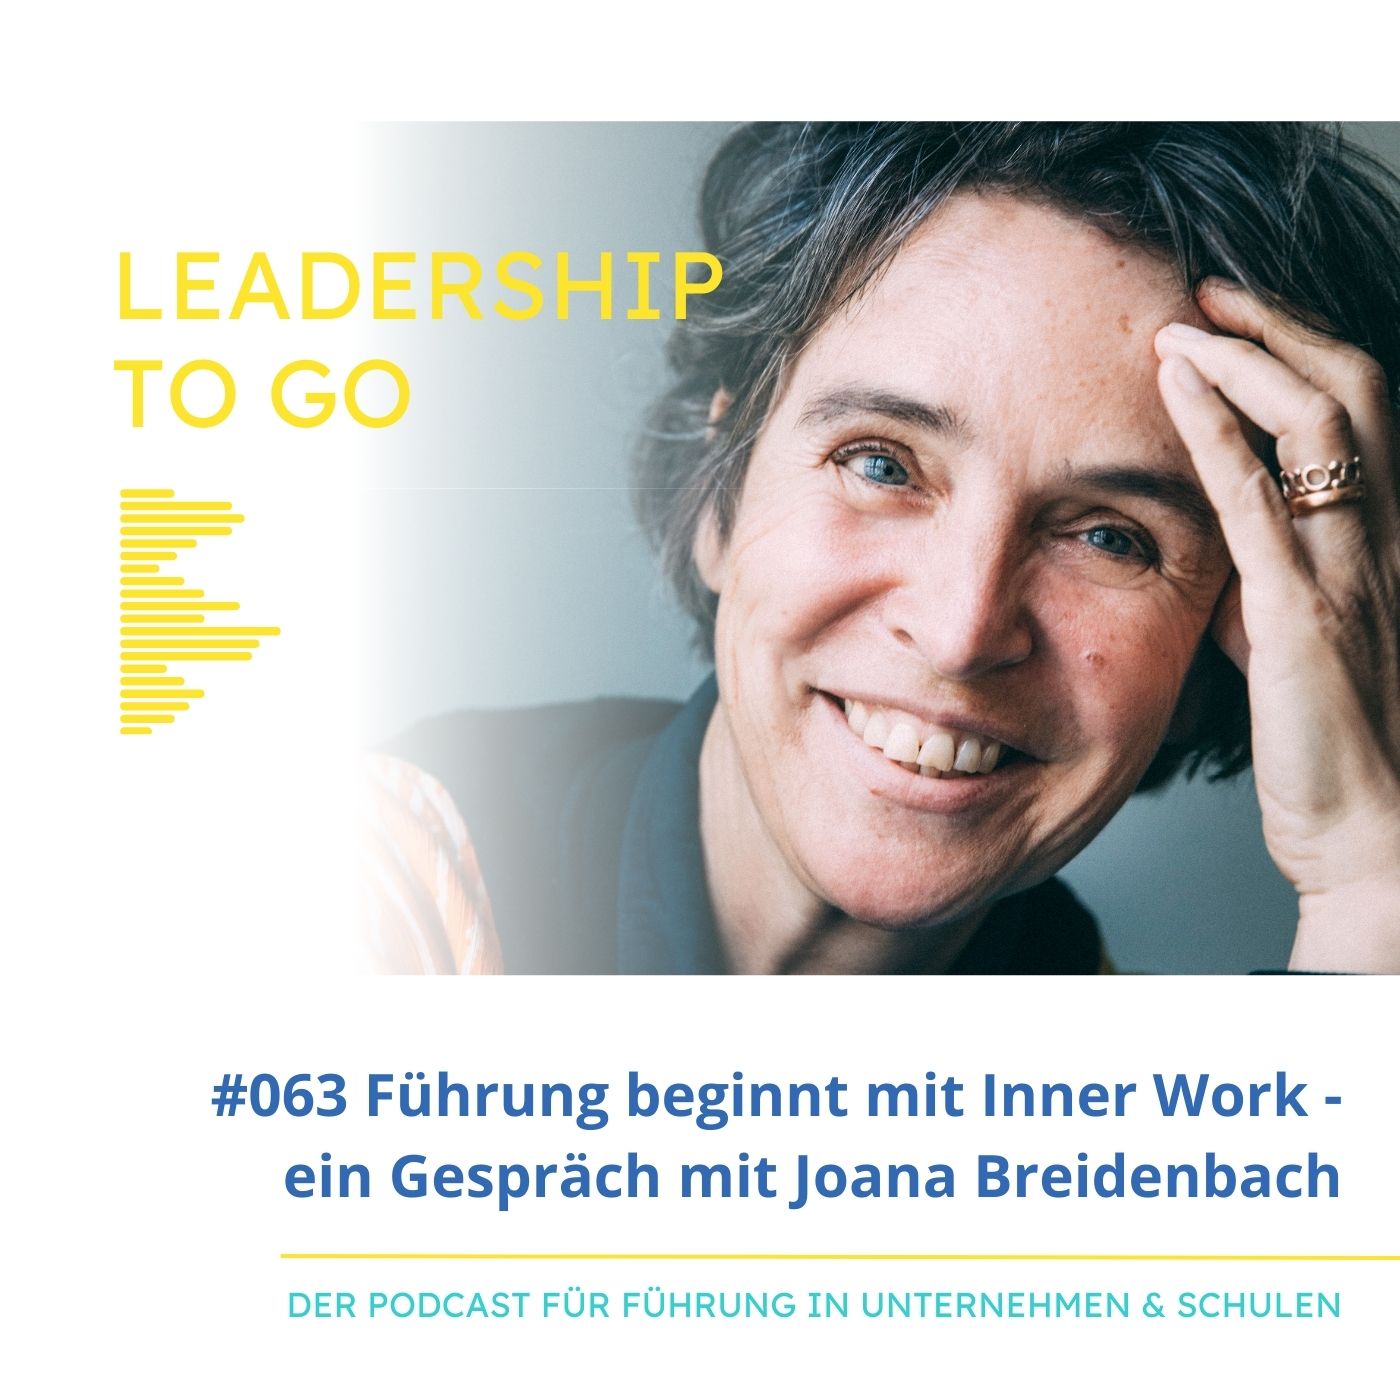 Leadership needs Inner Work - ein Gespräch mit Joana Breidenbach